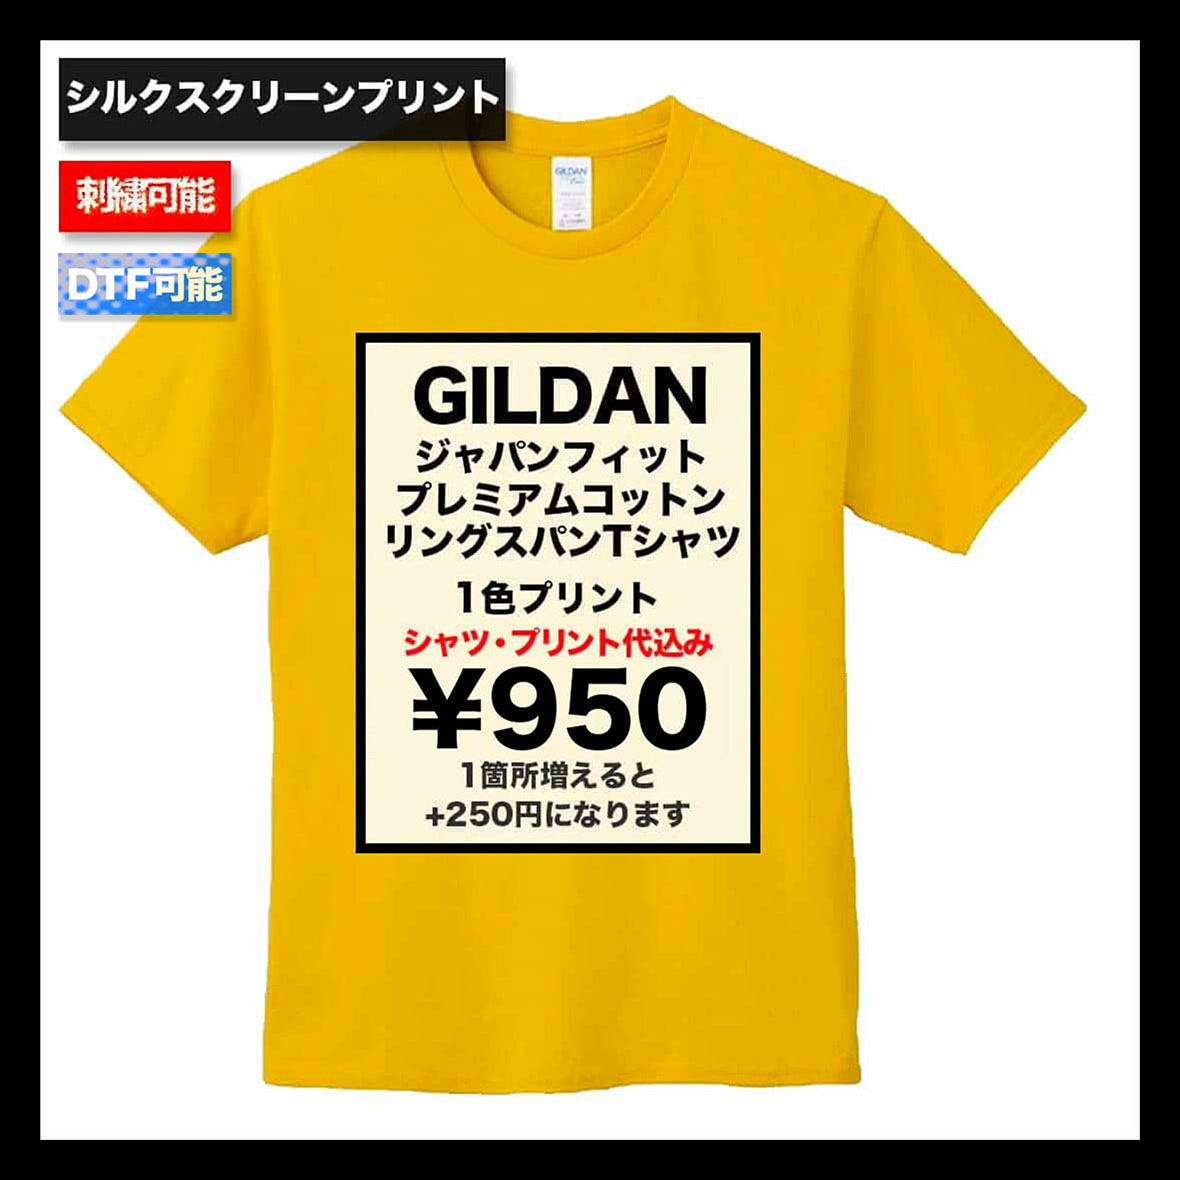 GILDAN ギルダン 5.3 oz ジャパンフィット プレミアムコットン リング